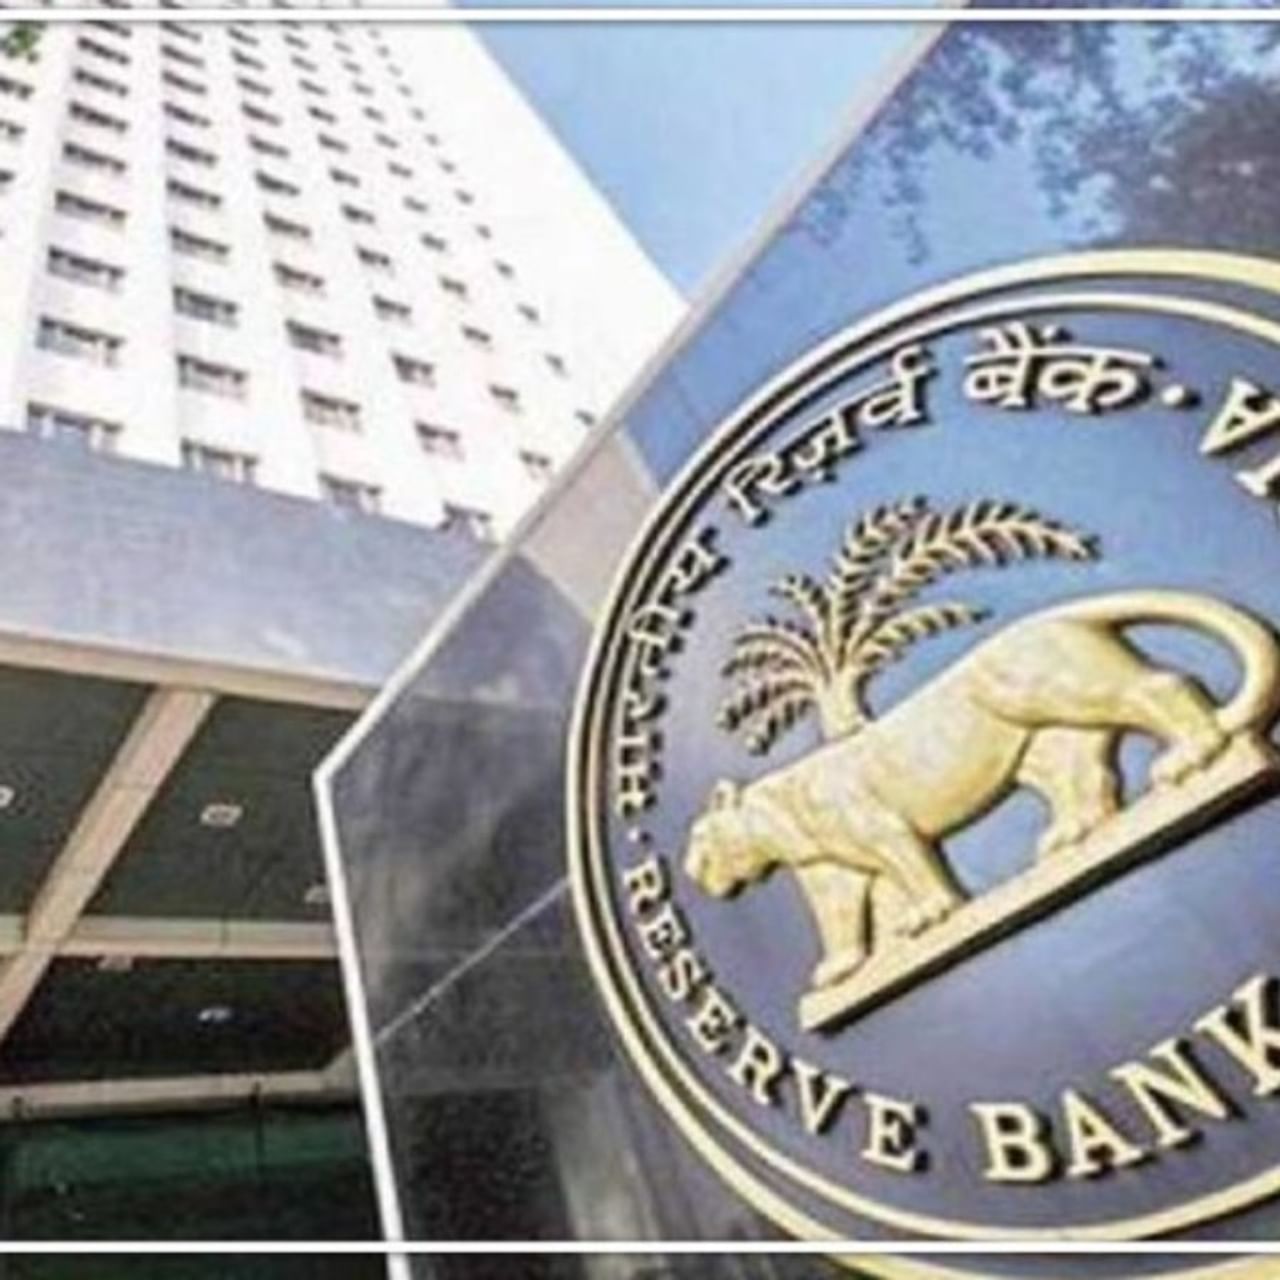 भारताची मध्यवर्ती बँक असलेल्या रिझर्व्ह बँक ऑफ इंडियाने (RBI) रेपो रेटमध्ये 40 बेसिस पॉइंटची वाढ केली आहे. रेपो रेट वाढल्याने एकीकडे बँकेचे लोन महाग झाले आहे. ईएमआयमध्ये वाढ झाली आहे. तर दुसरीकडे बँकेमधील एफडीचे दर (FD Interest Rate) वाढल्याने ग्राहकांना थोडा का होत नाही दिलासा मिळाला आहे. आरबीआयच्या या निर्णयानंतर एकाचवेळी चार बँकांनी आपल्या बचत खात्यांच्या व्याज दरात वाढ करण्याचा निर्णय घेतला आहे. त्यामुळे आता या बँकेत ज्या ग्राहकांची एफडी आहे त्यांना जादा व्याज दर मिळणार आहे.  